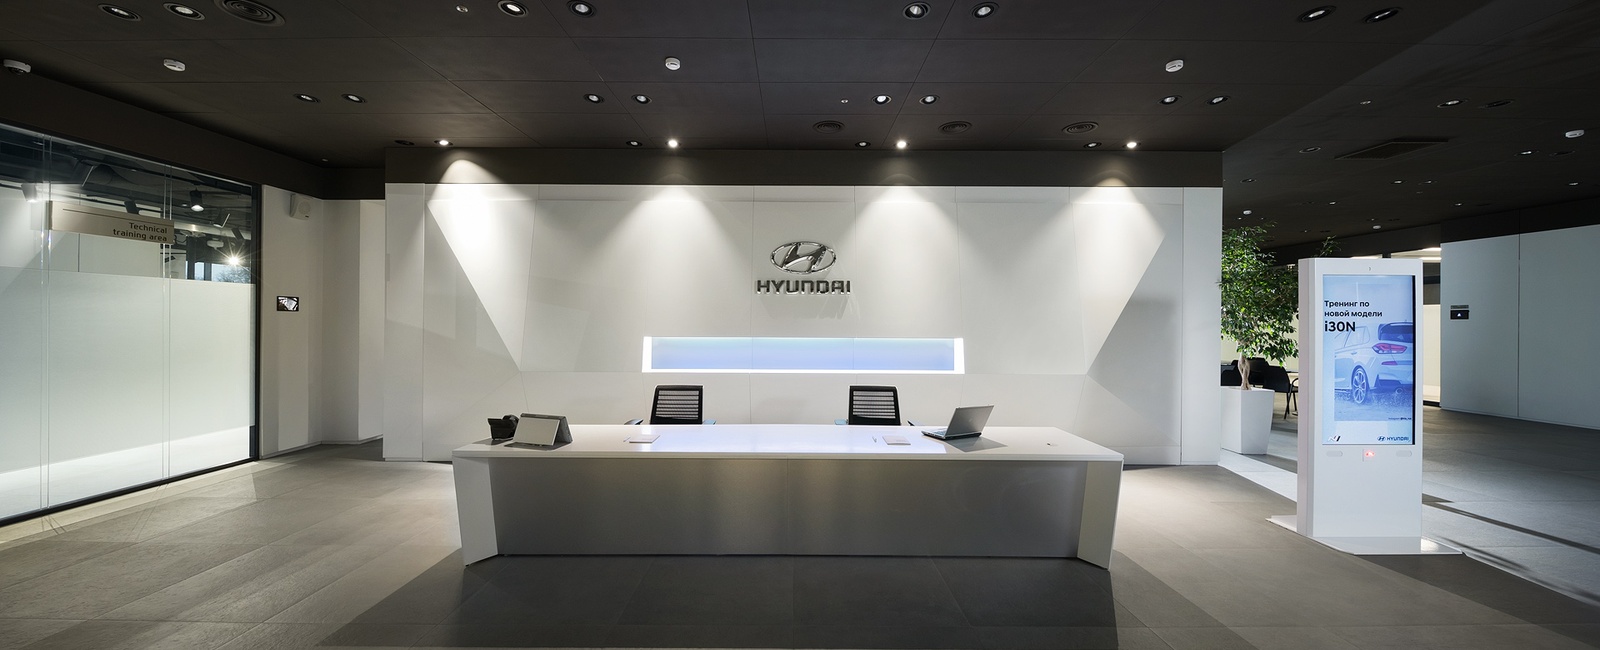 Multimedia complex for Hyundai Training Academy